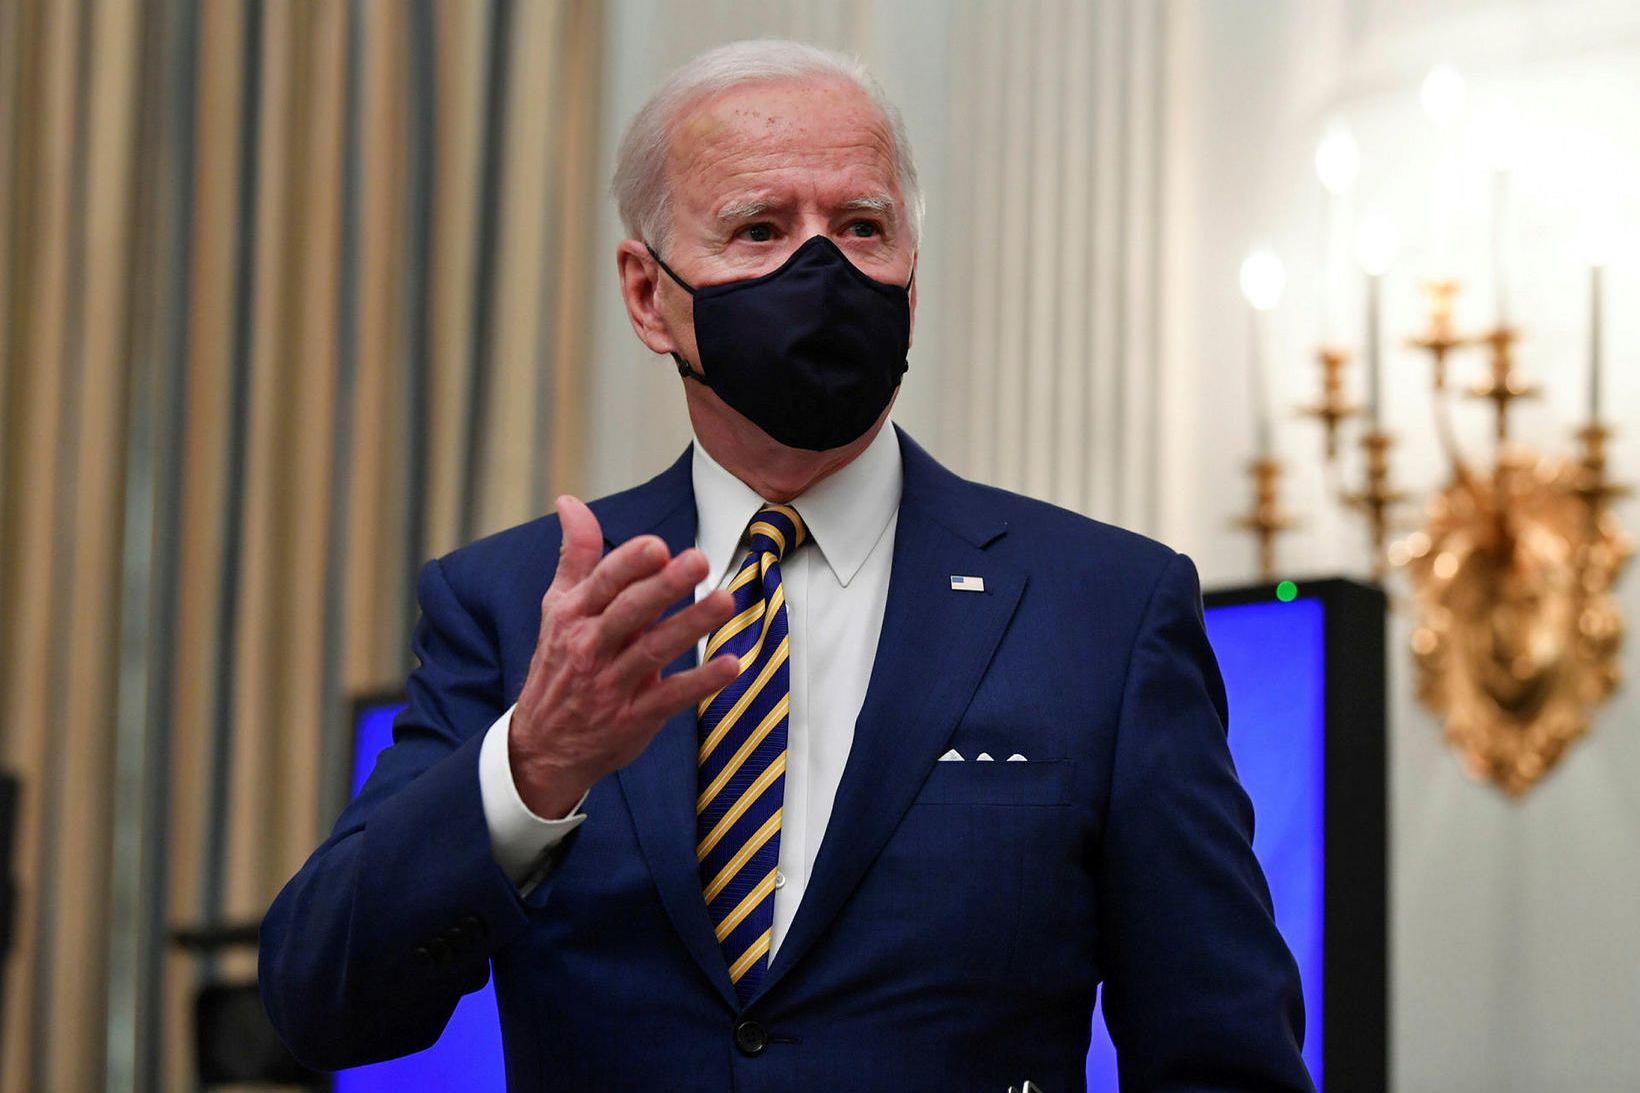 Joe Biden, forseti Bandaríkjanna.